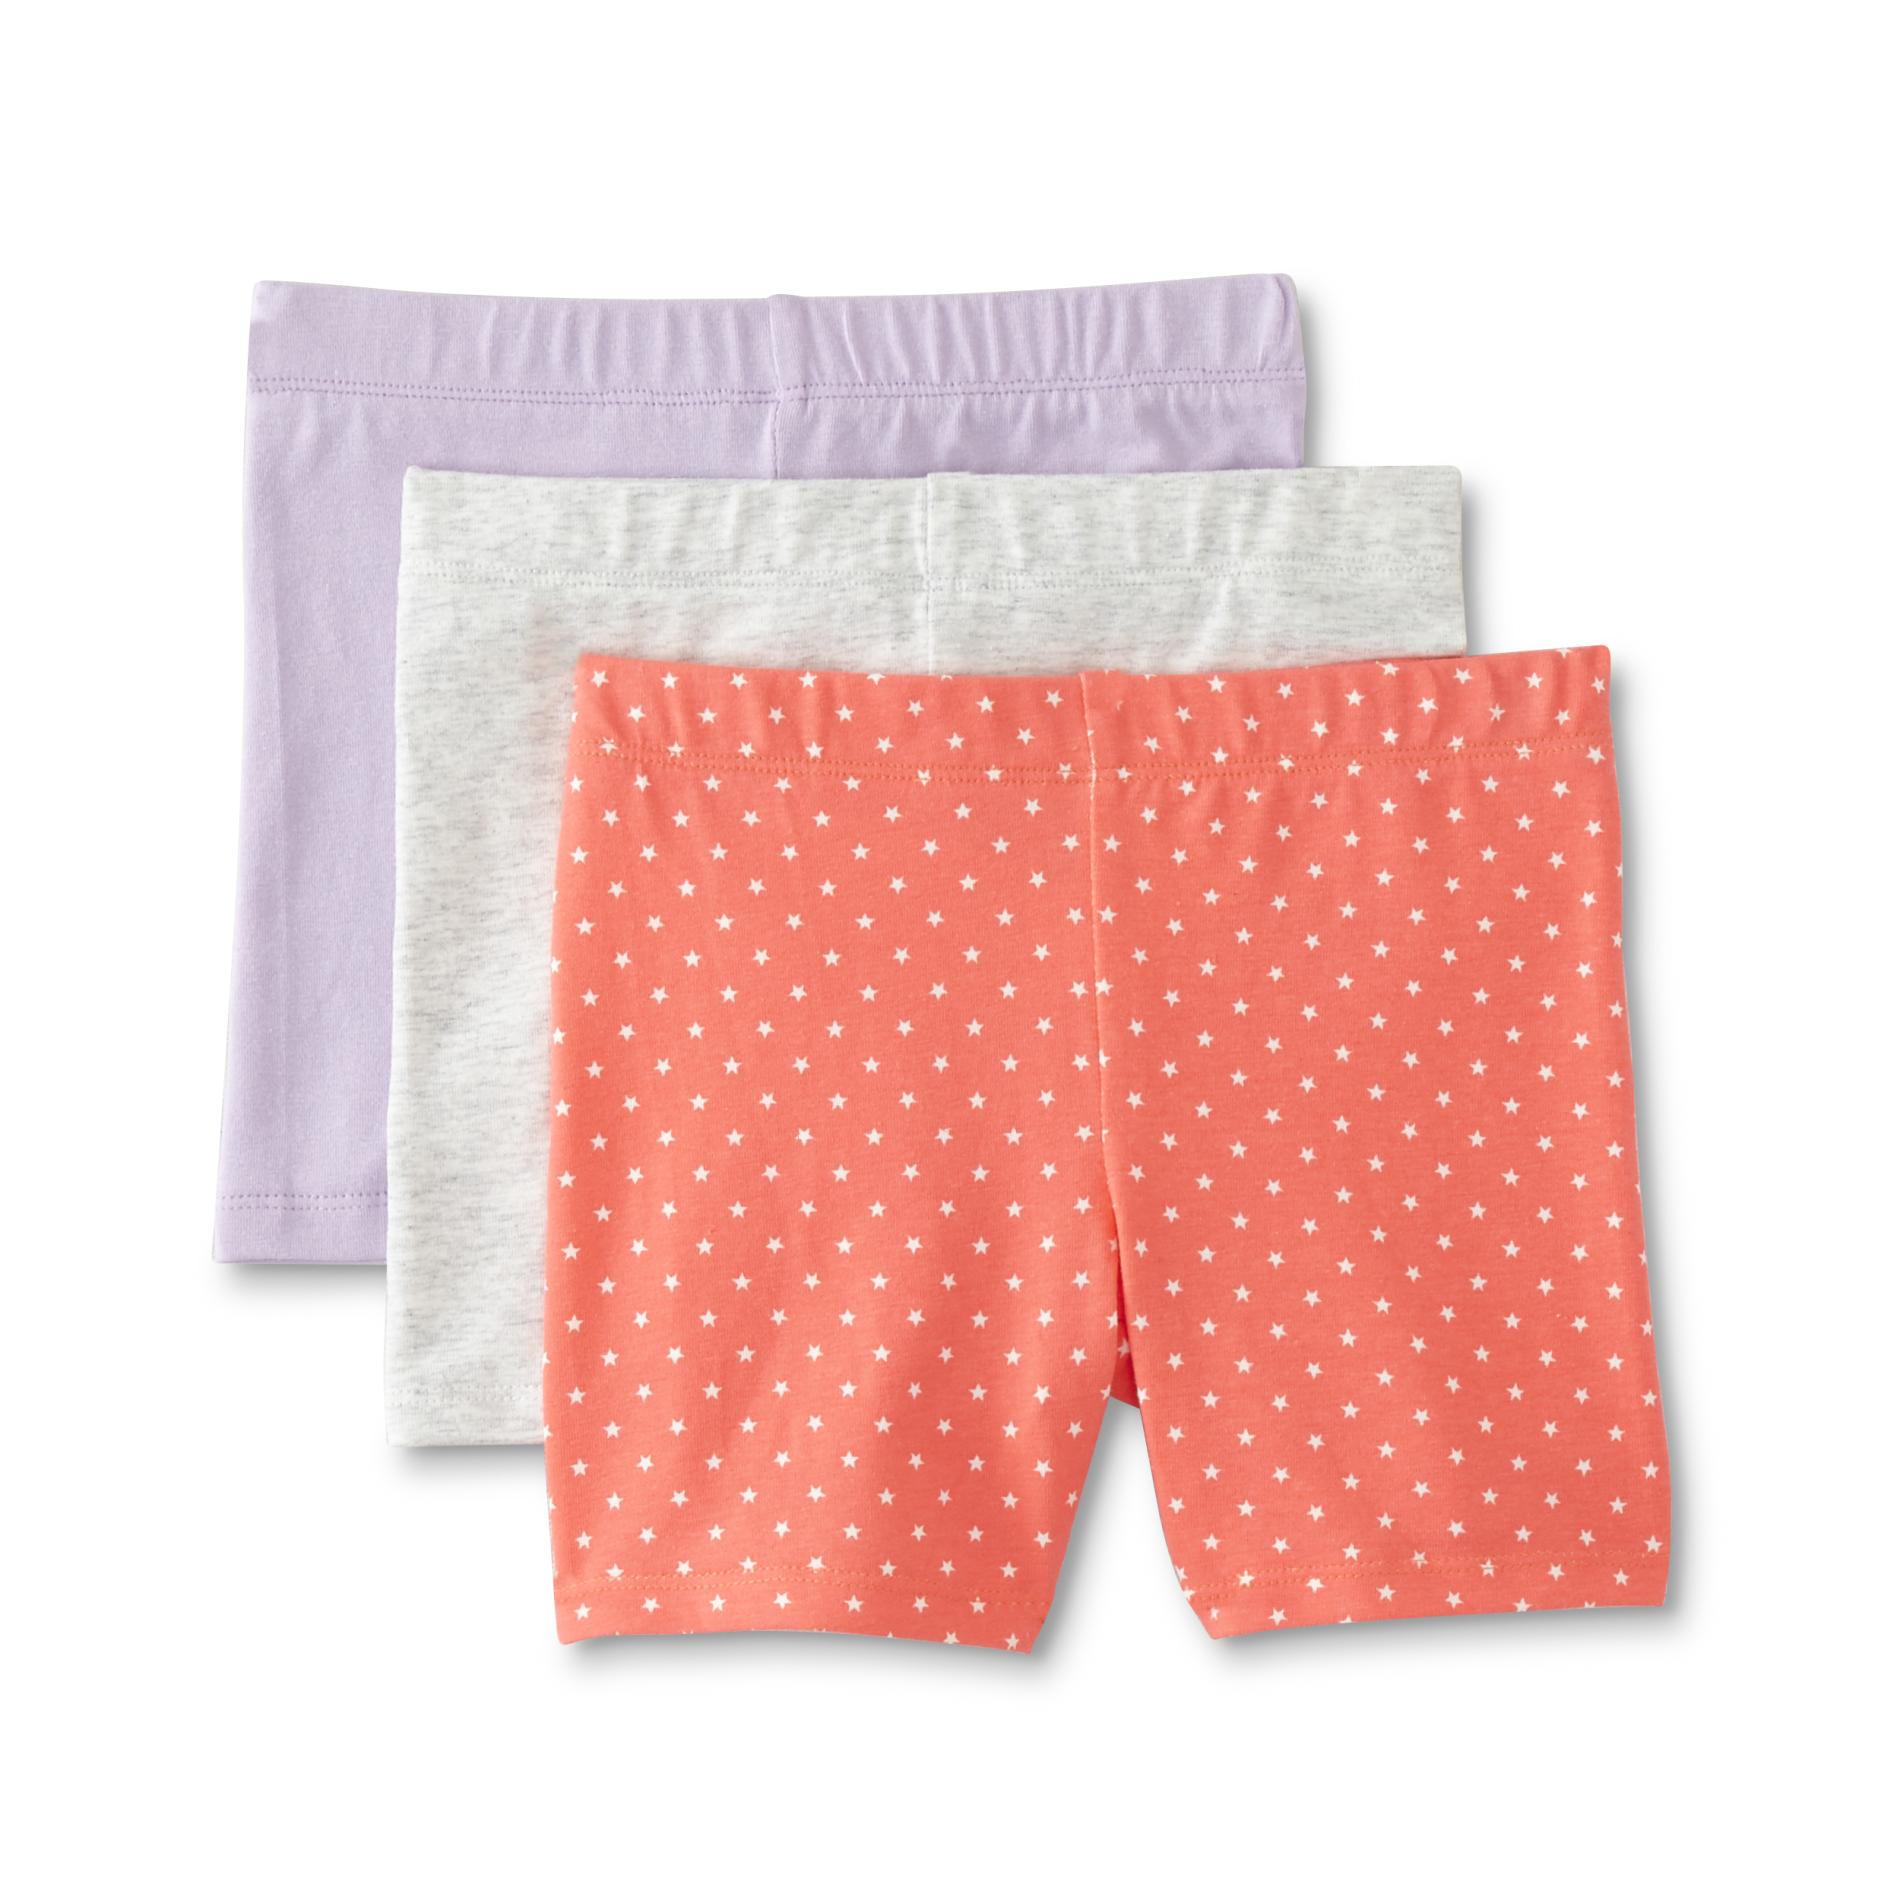 Toughskins Infant &Toddler Girls' 3-Pack Bike Shorts - Stars